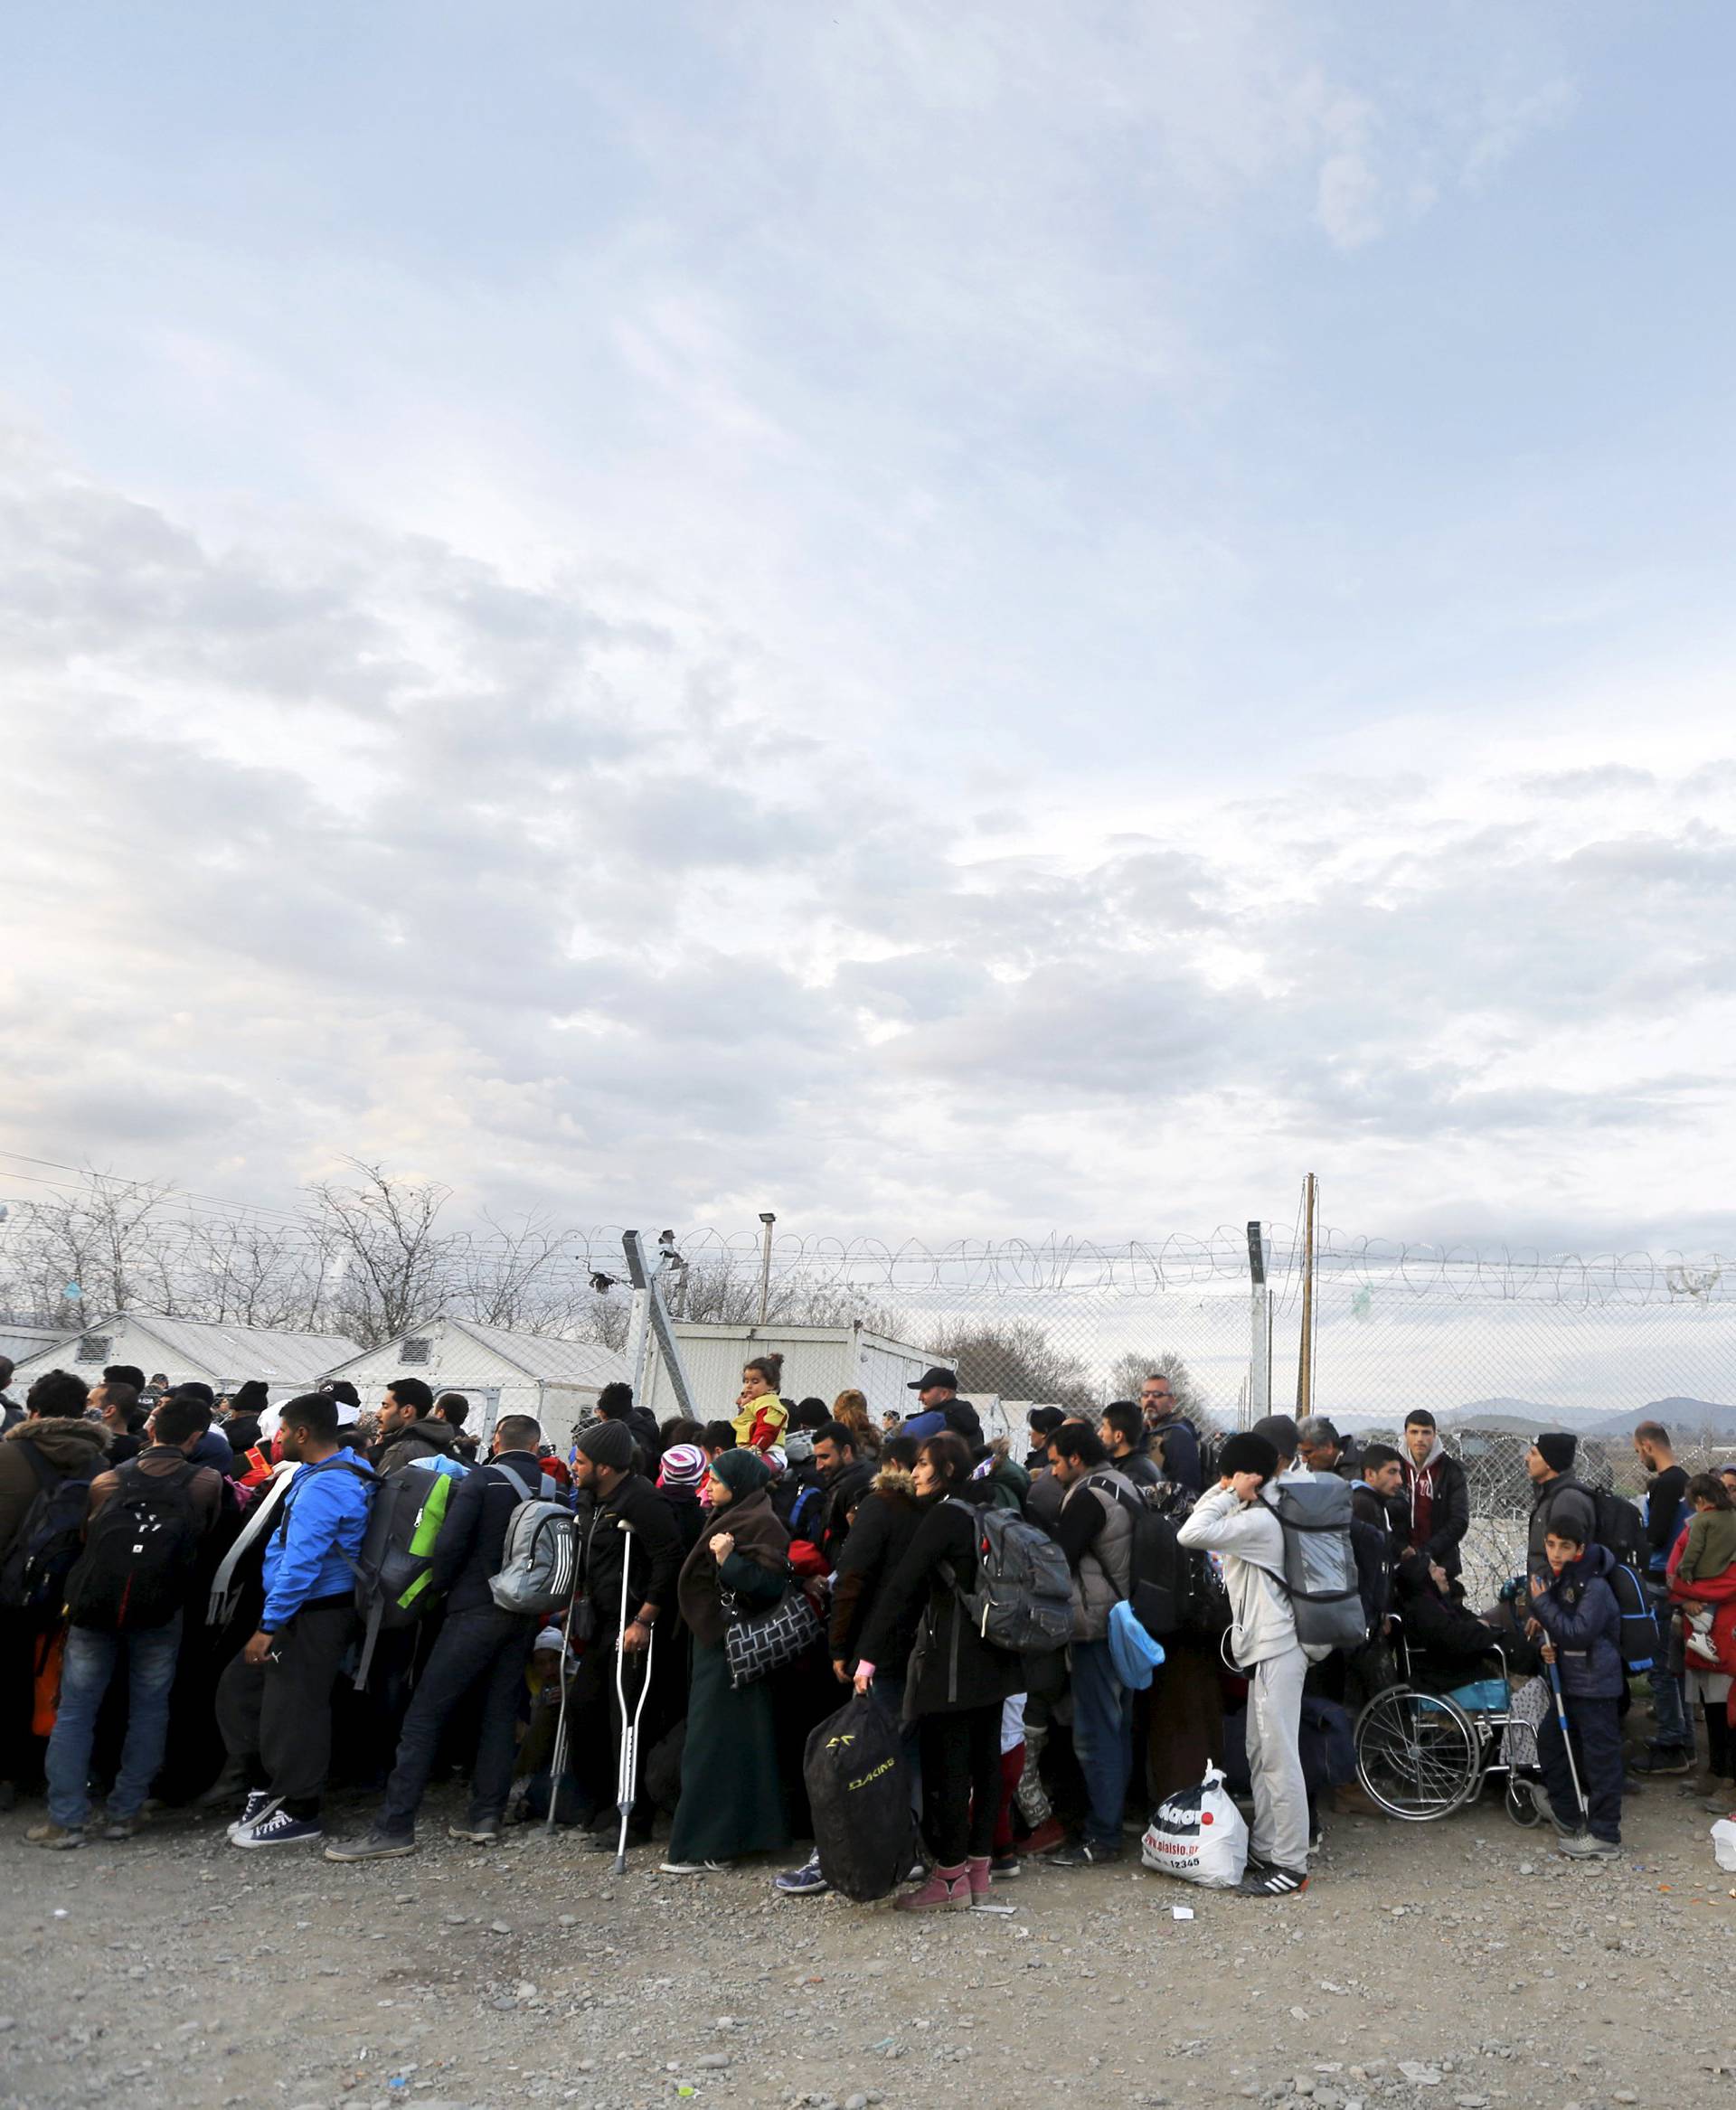 Na grčko-makedonskoj granici blokirano oko 5000 izbjeglica